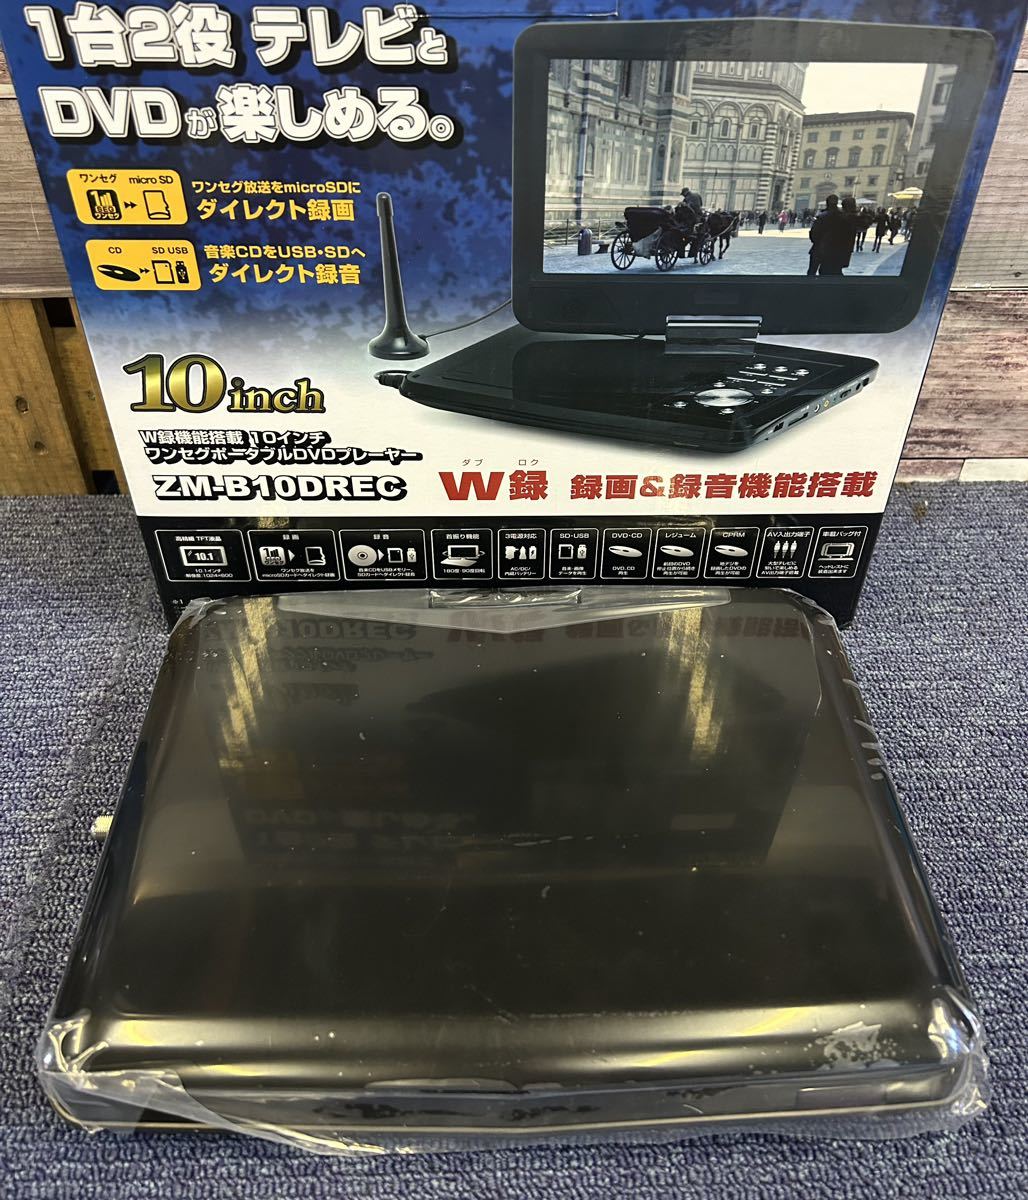  новый товар есть перевод 10 дюймовый 1 SEG W запись c функцией портативный DVD плеер 